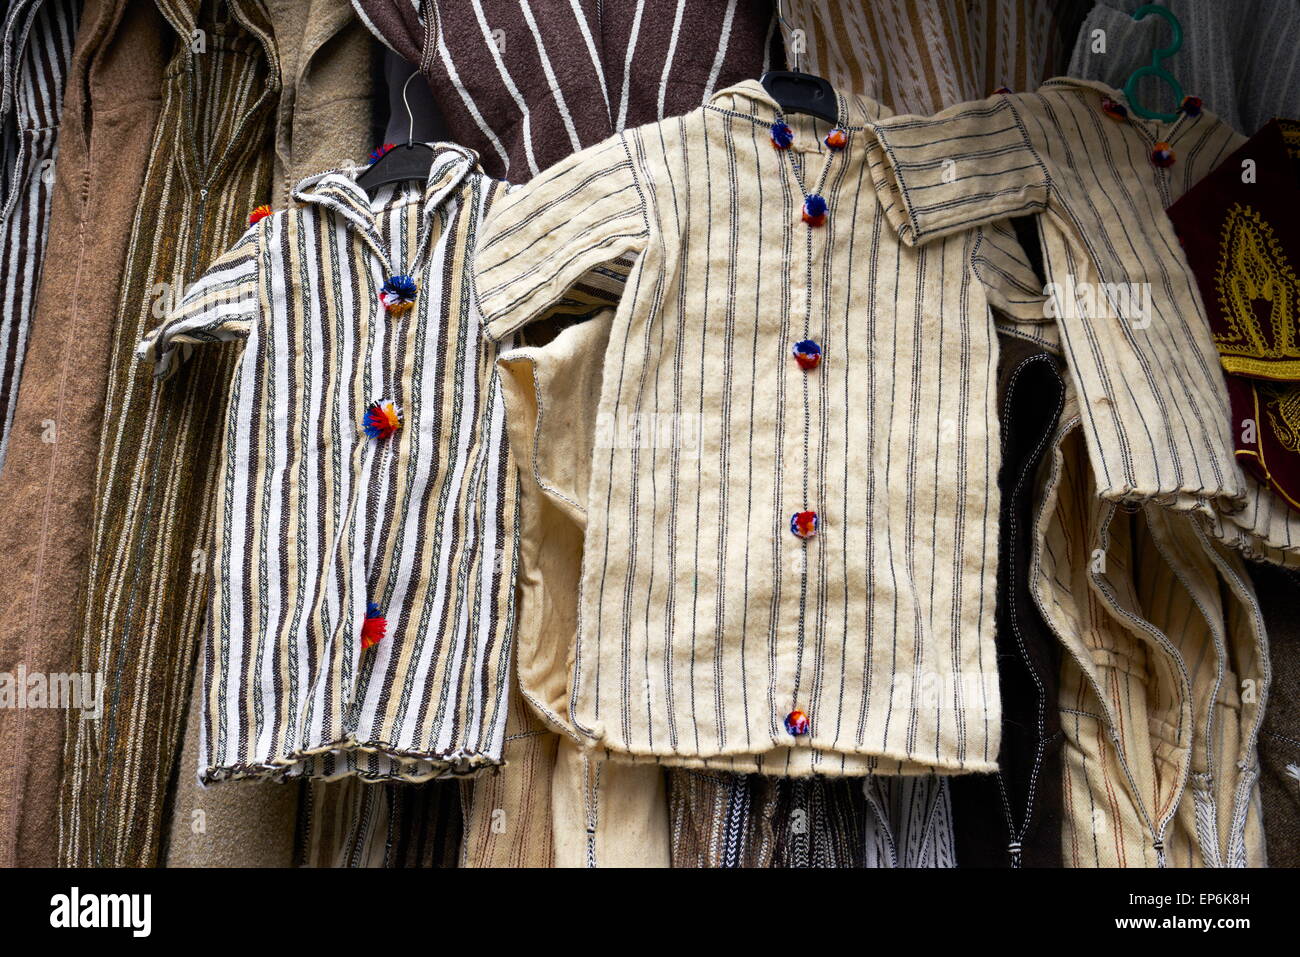 Boutique de vêtements. Djellabas de laine, robe traditionnelle marocaine berbère. Maroc Banque D'Images